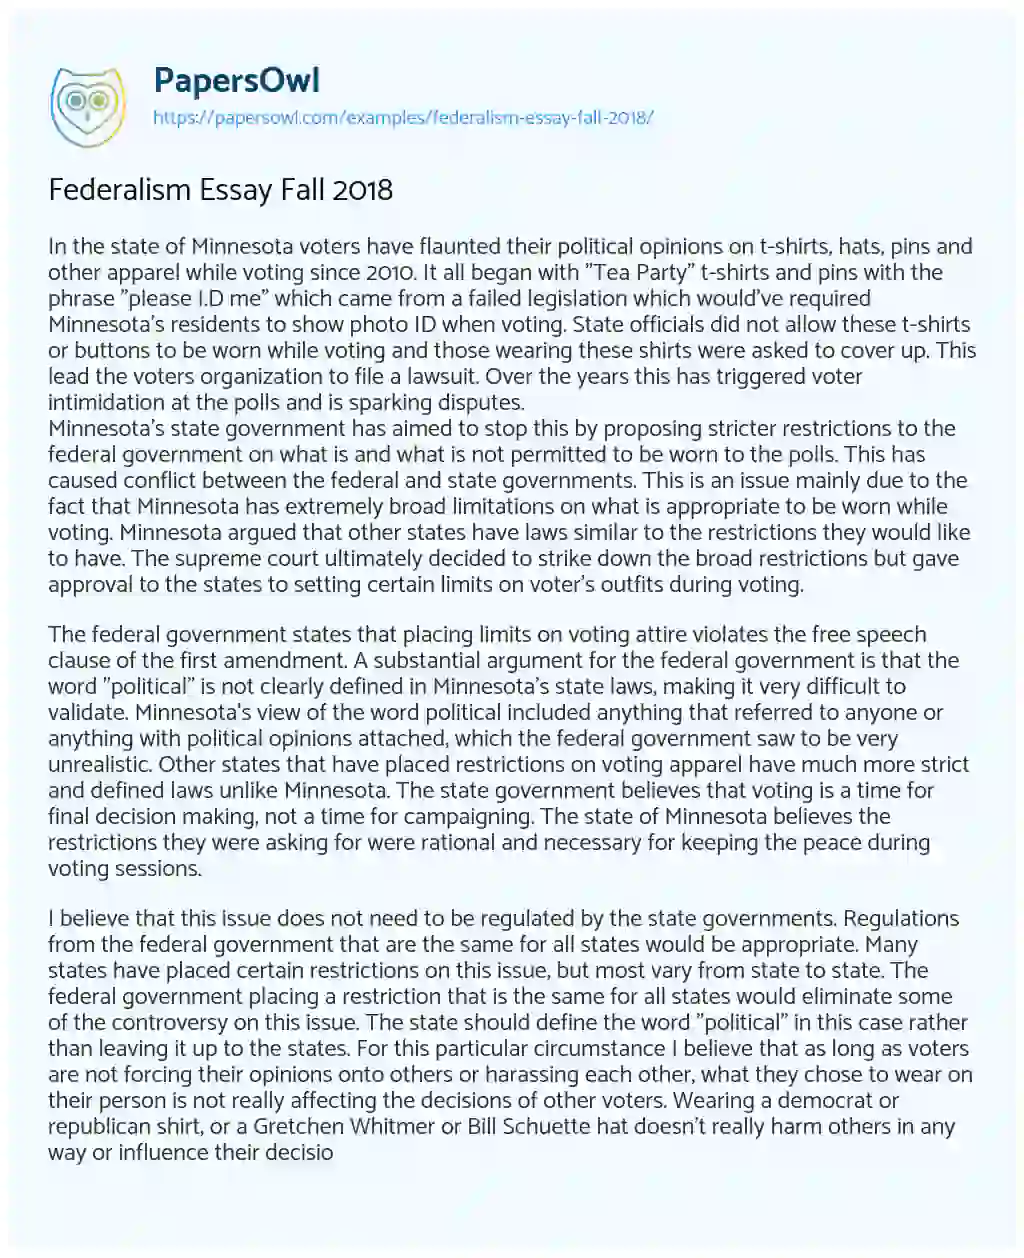 Essay on Federalism Essay Fall 2018